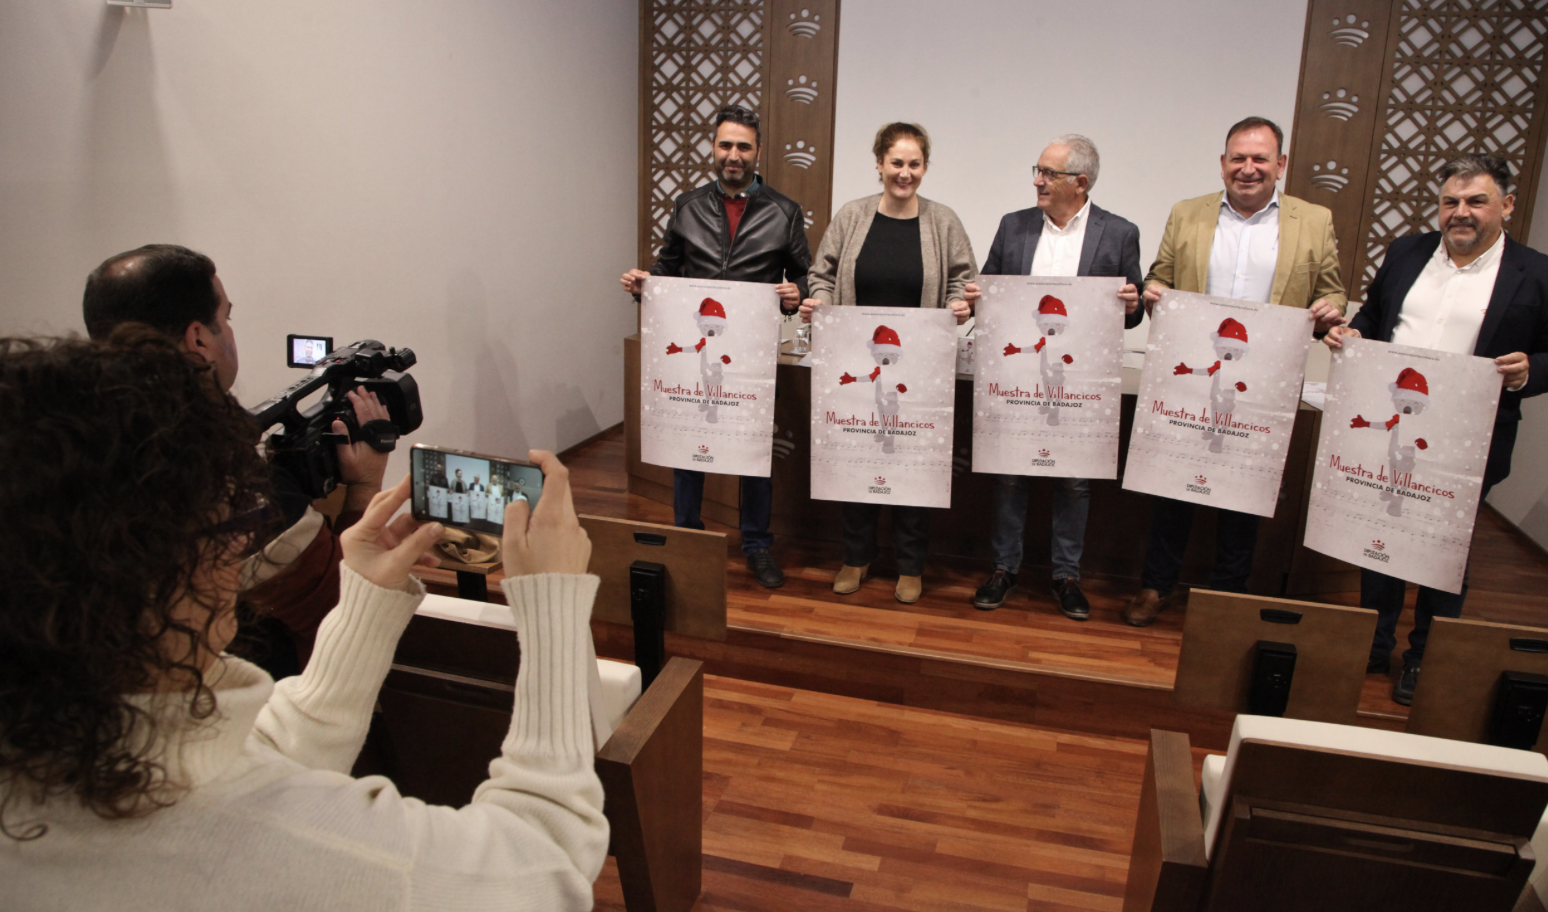 La 40 Muestra de Villancicos de Diputación de Badajoz ofrecerá actuaciones en seis municipios del 10 al 23 de diciembre